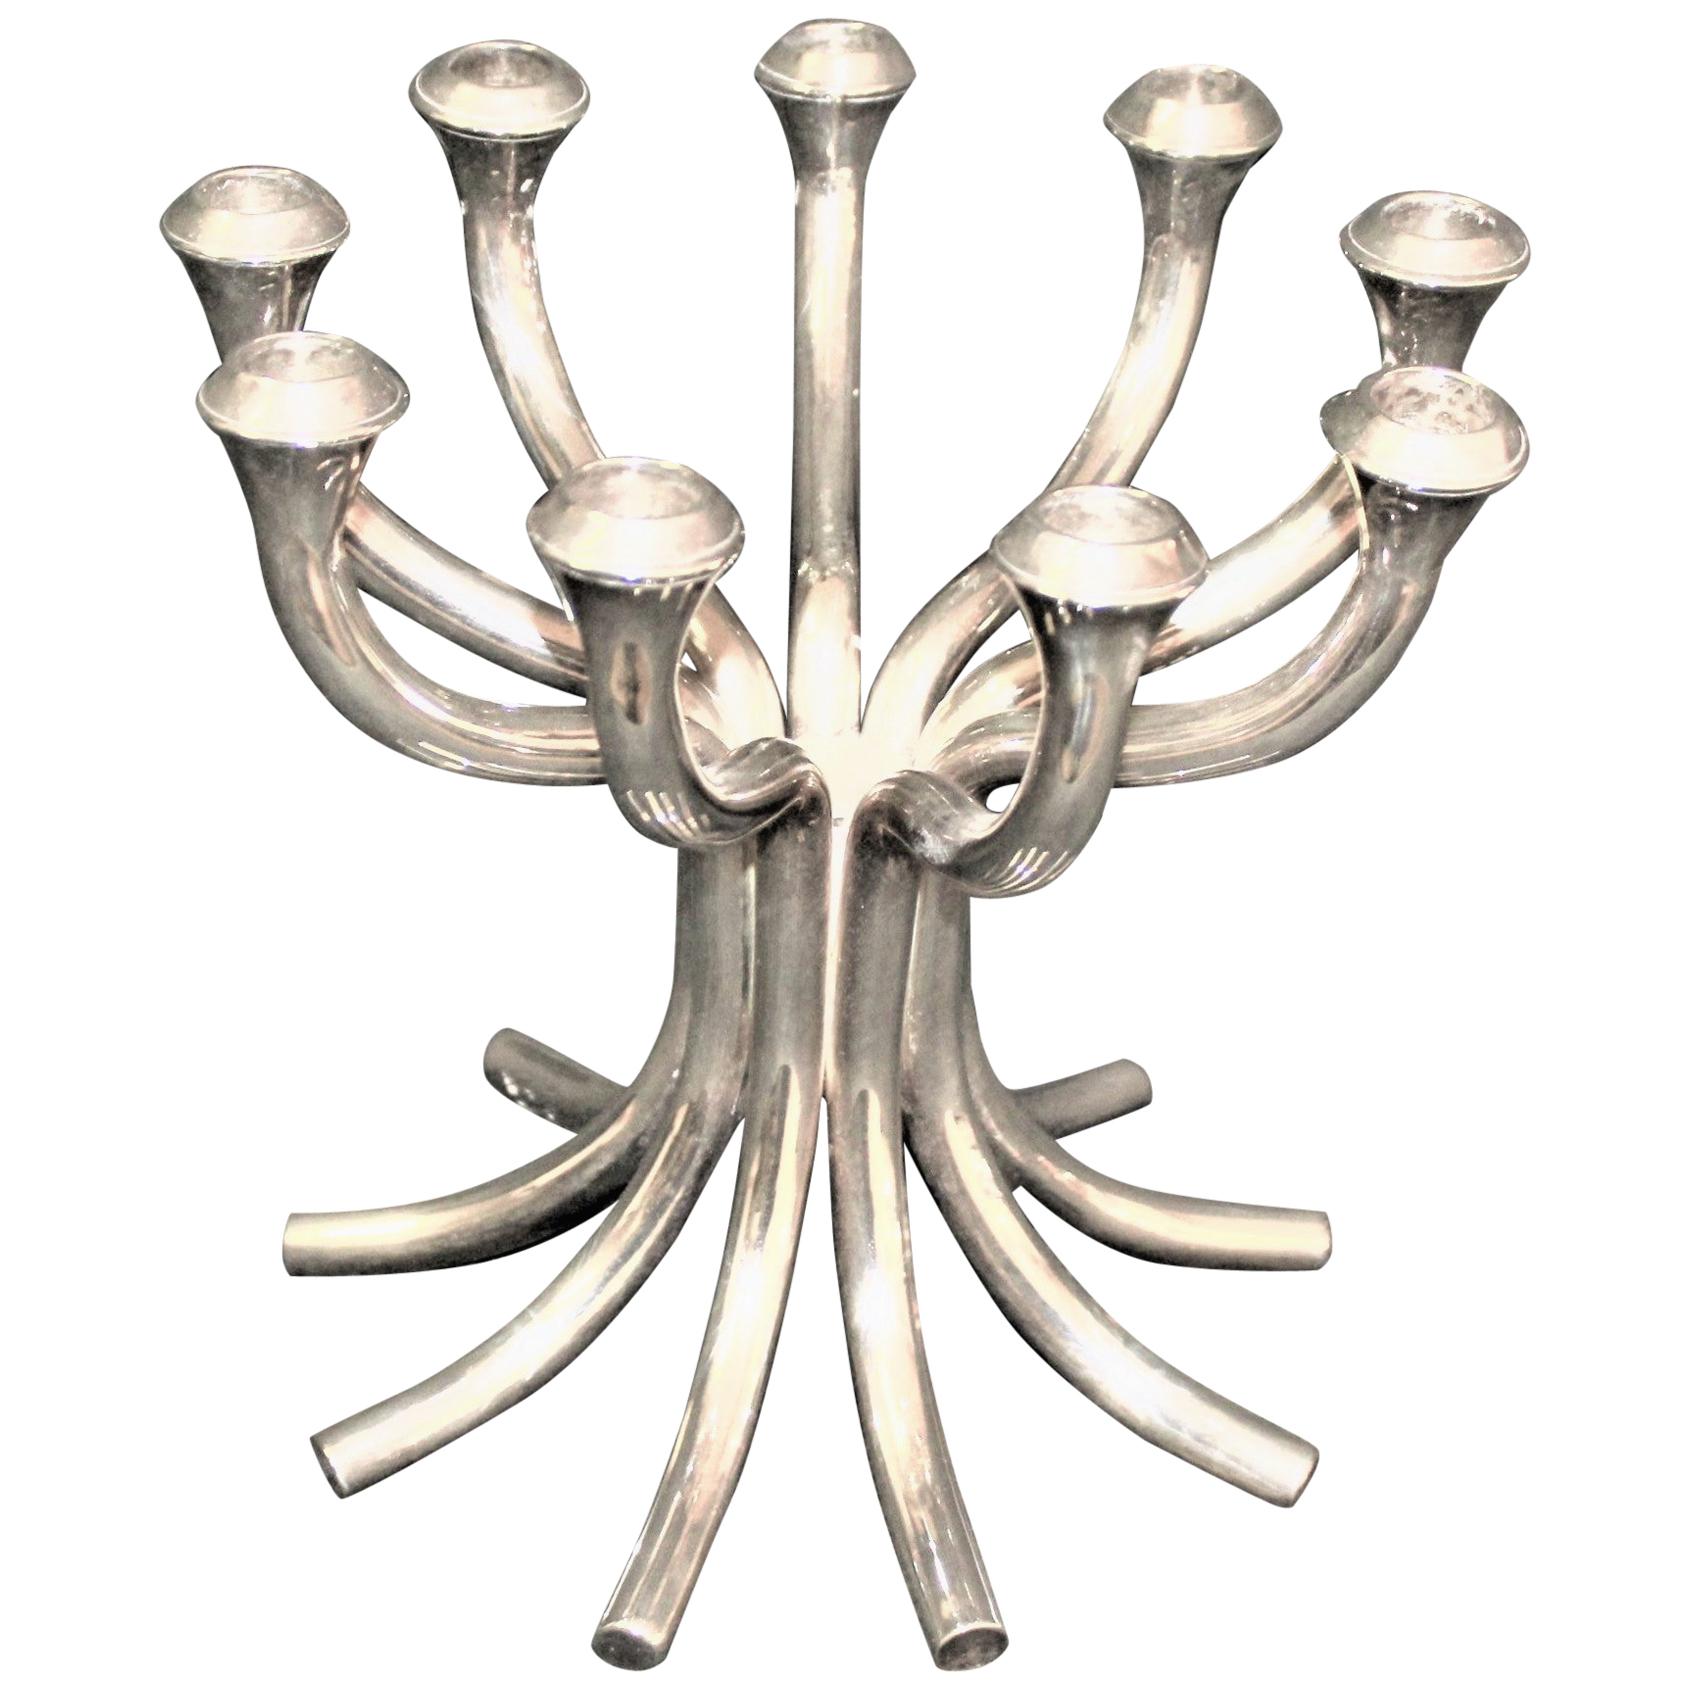 Silberne Silberkandelaber, 9 Kerzen, signiert Umbra auf der Unterseite, versilberte Oberfläche